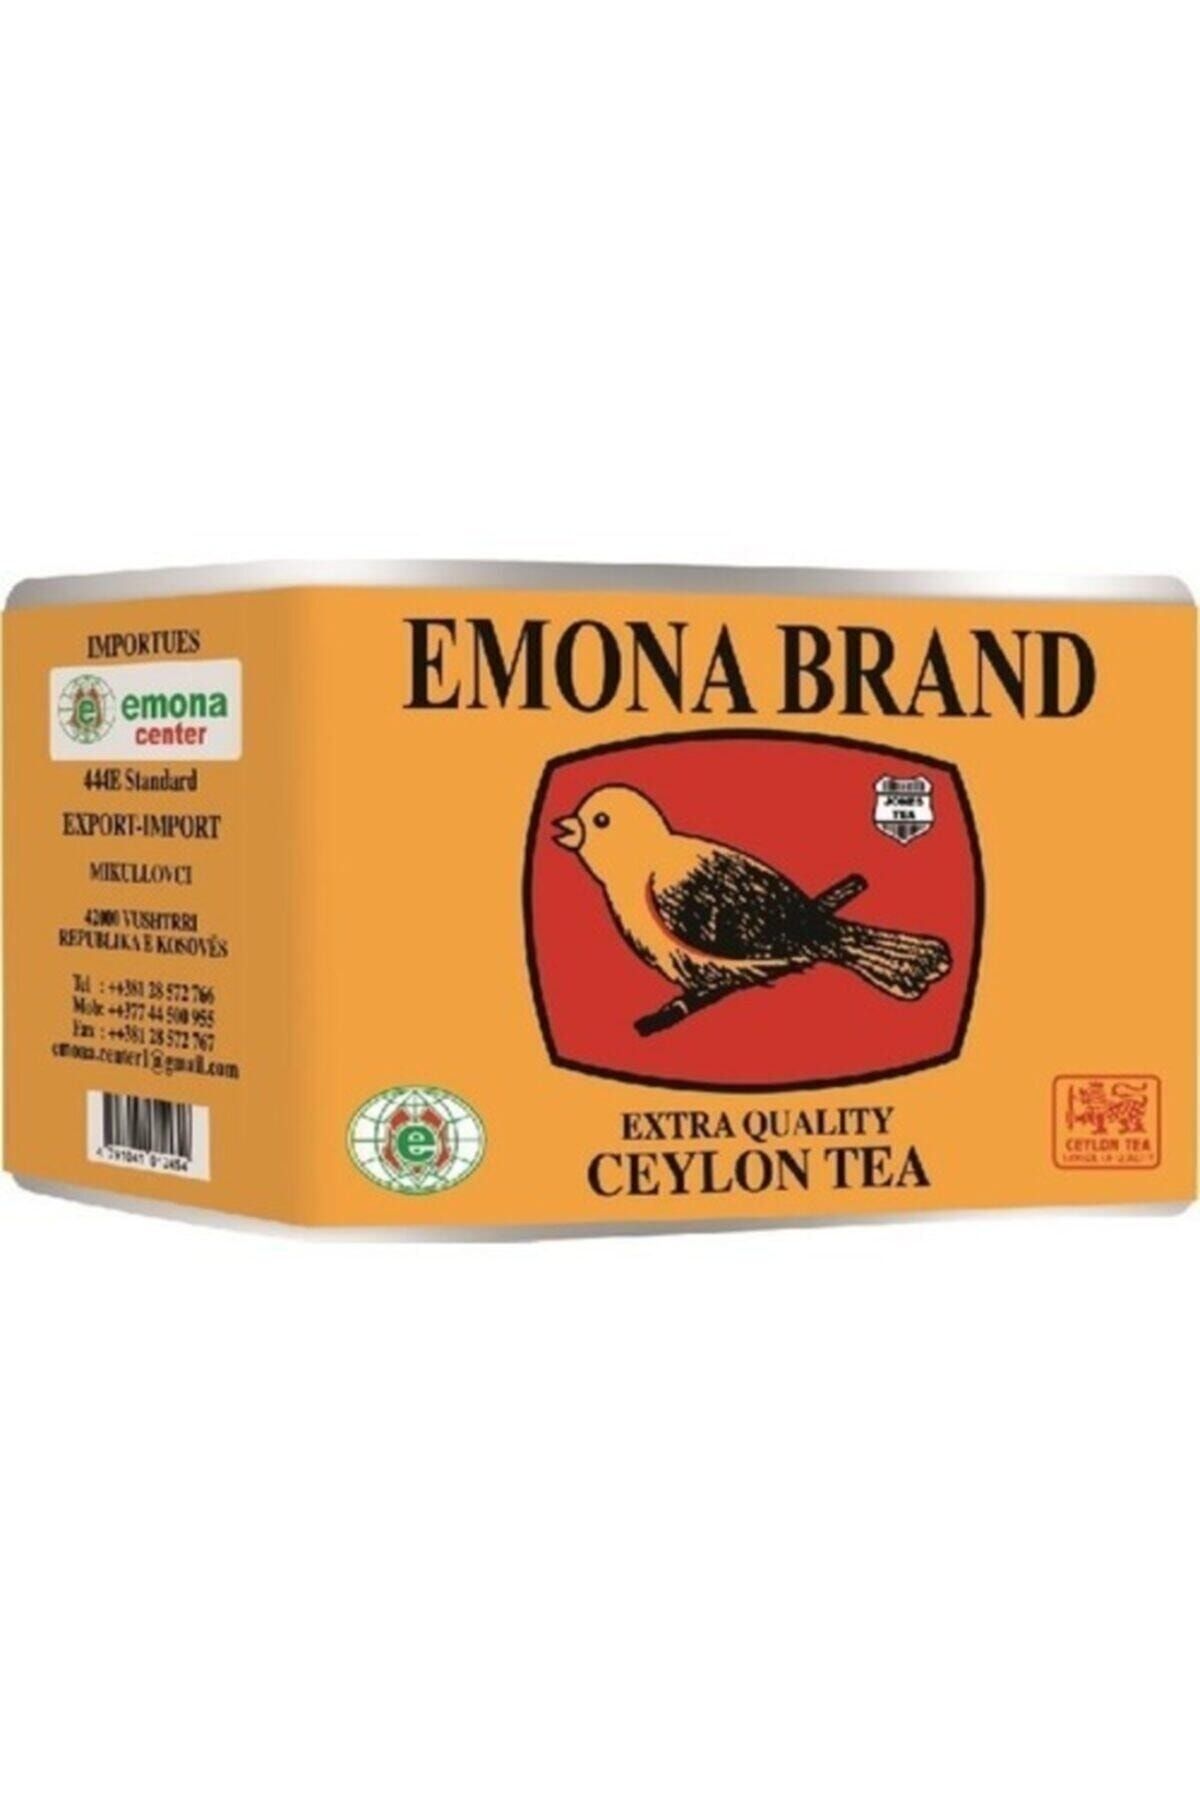 Seylon Çay Emona Brand Ceylon Tea Seylan Çayı 1kg